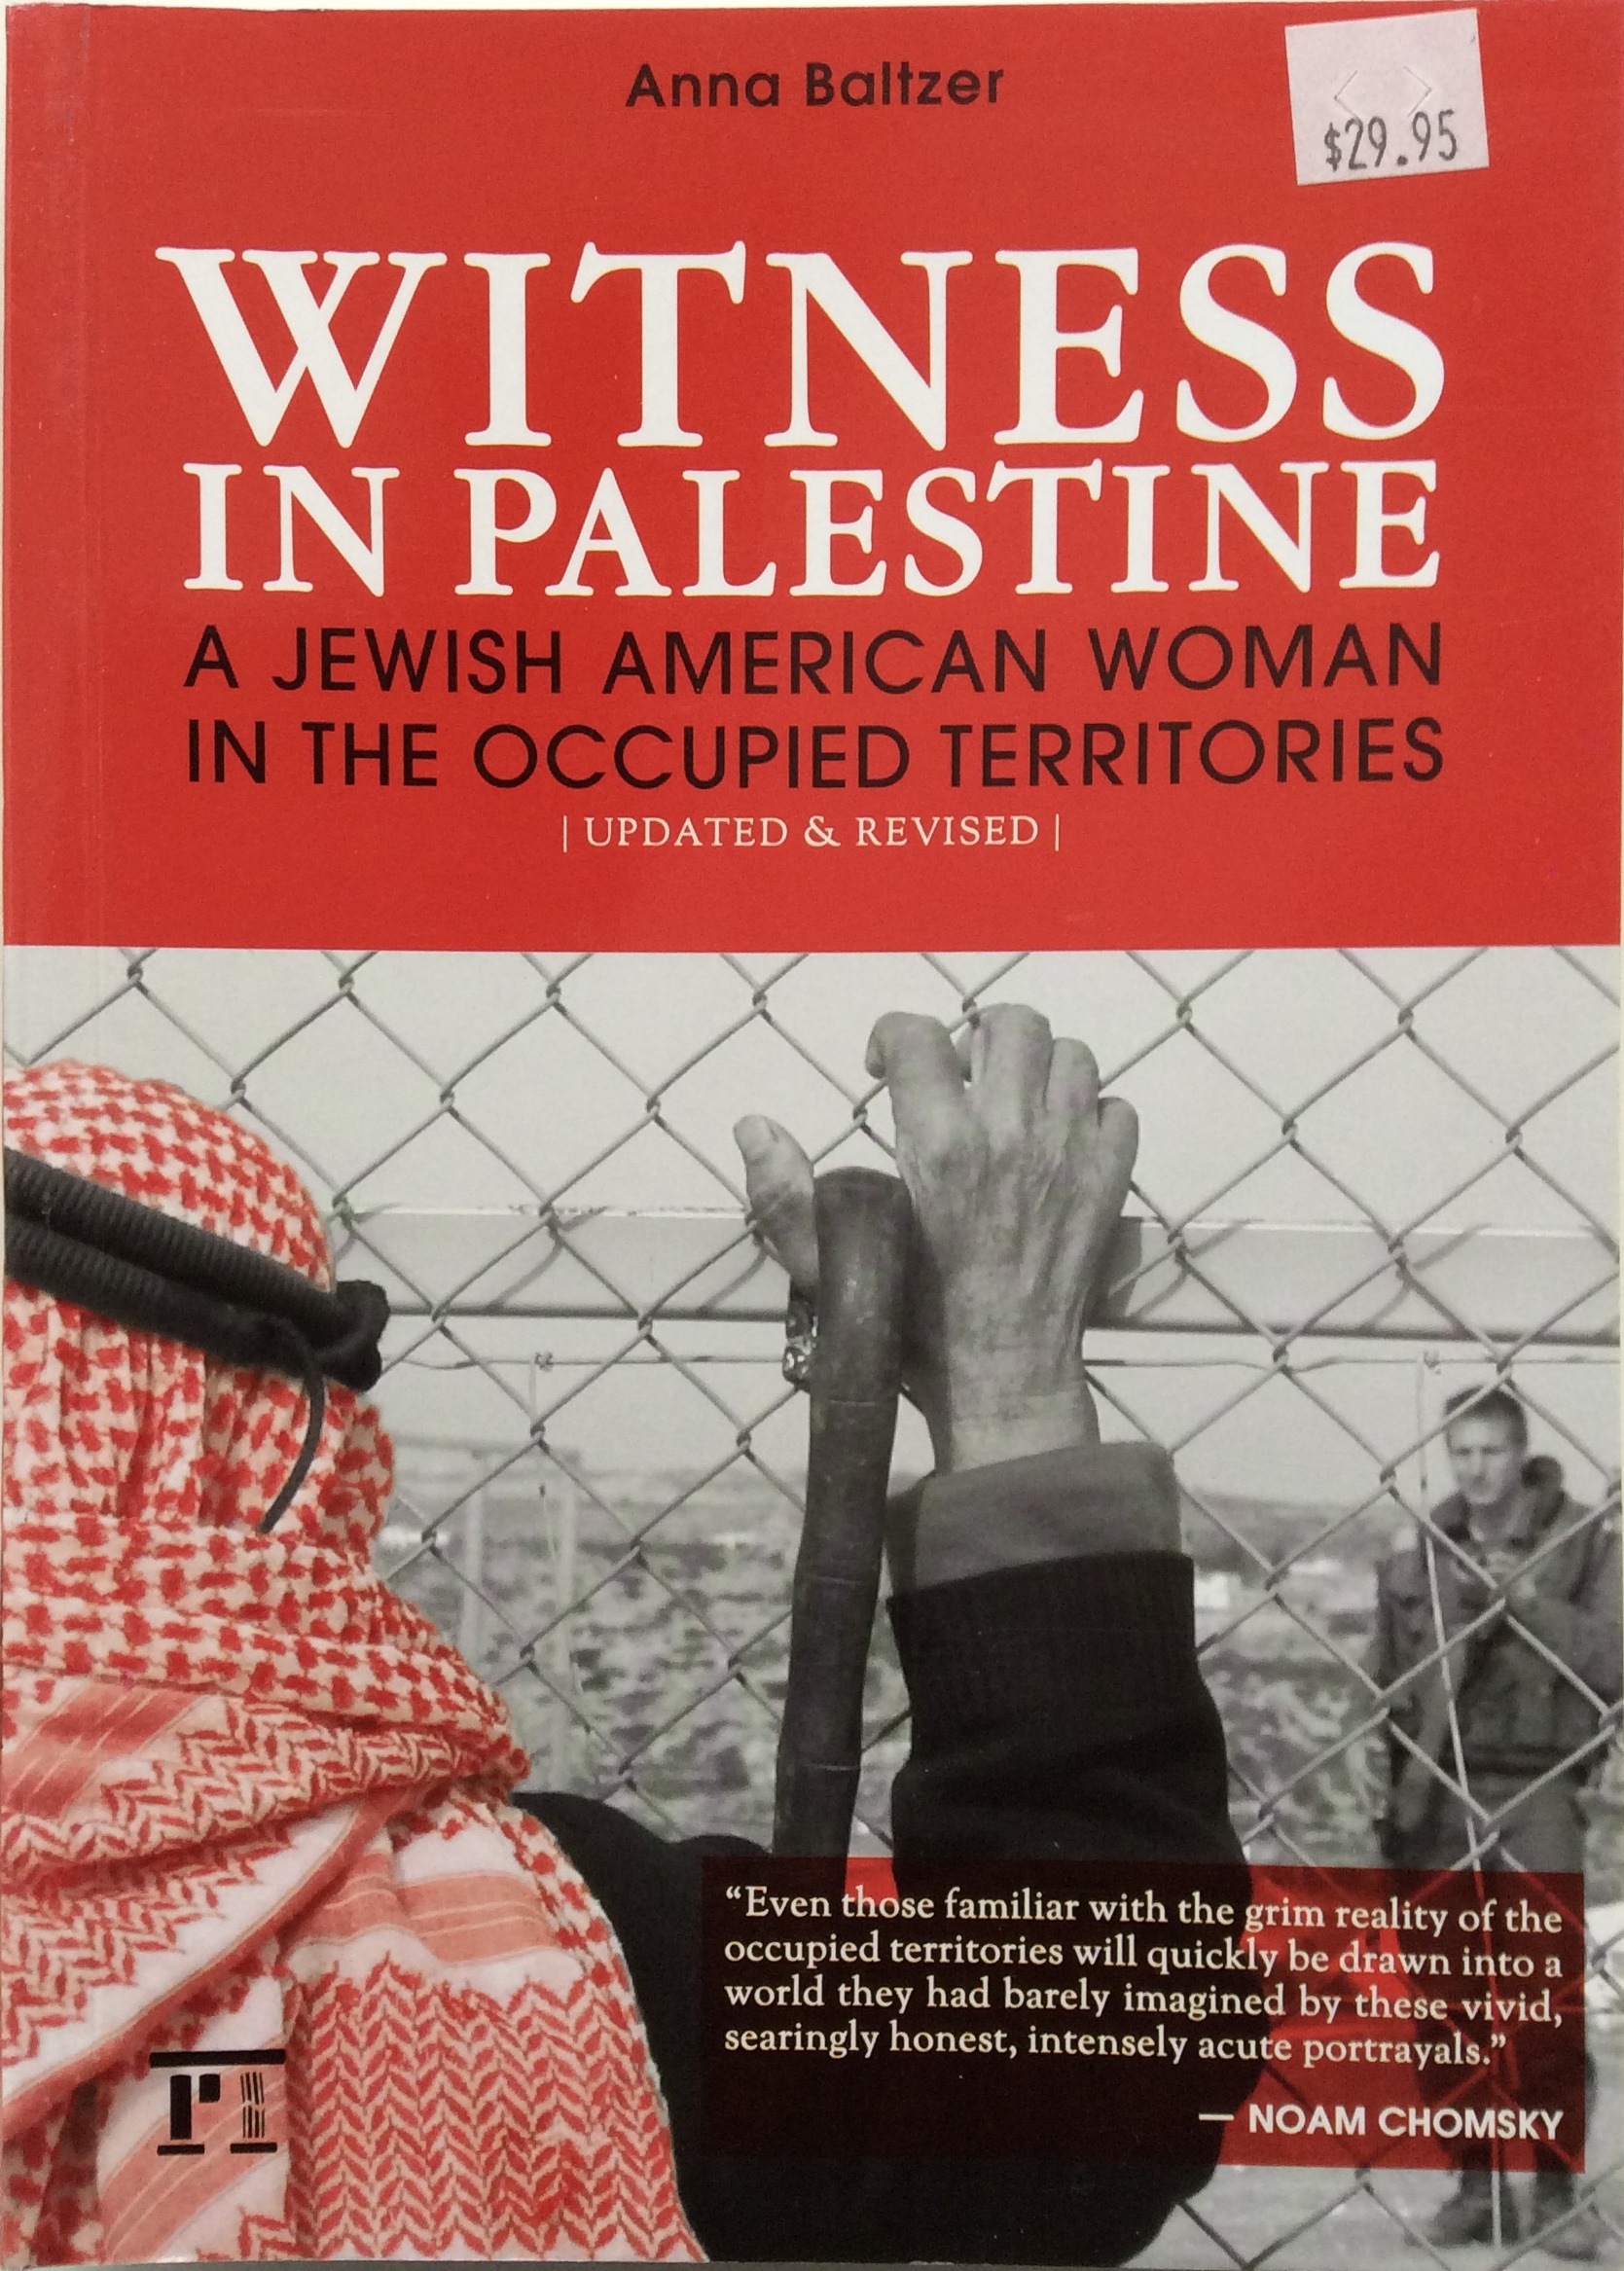 Witness in Palestine